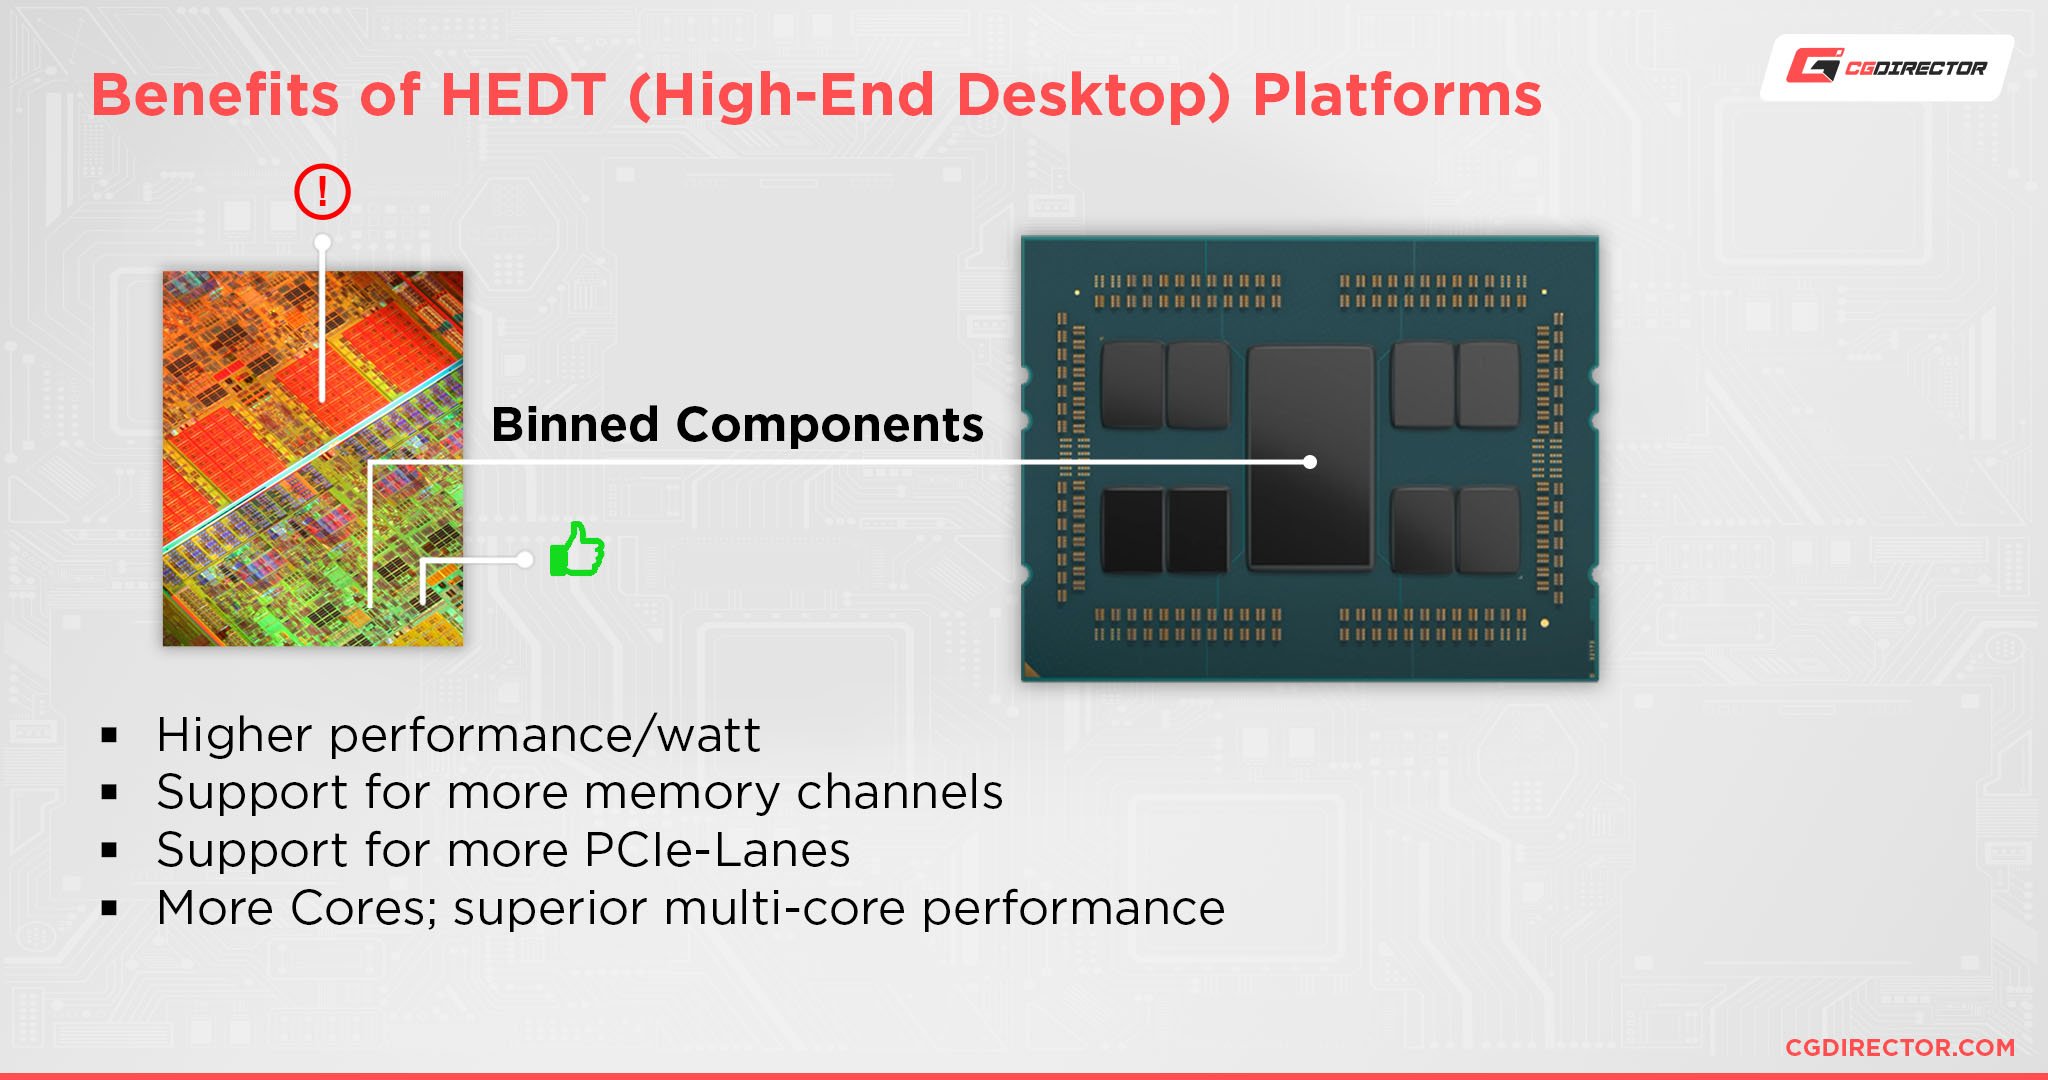 Benefits of HEDT (High-End Desktop) Platforms